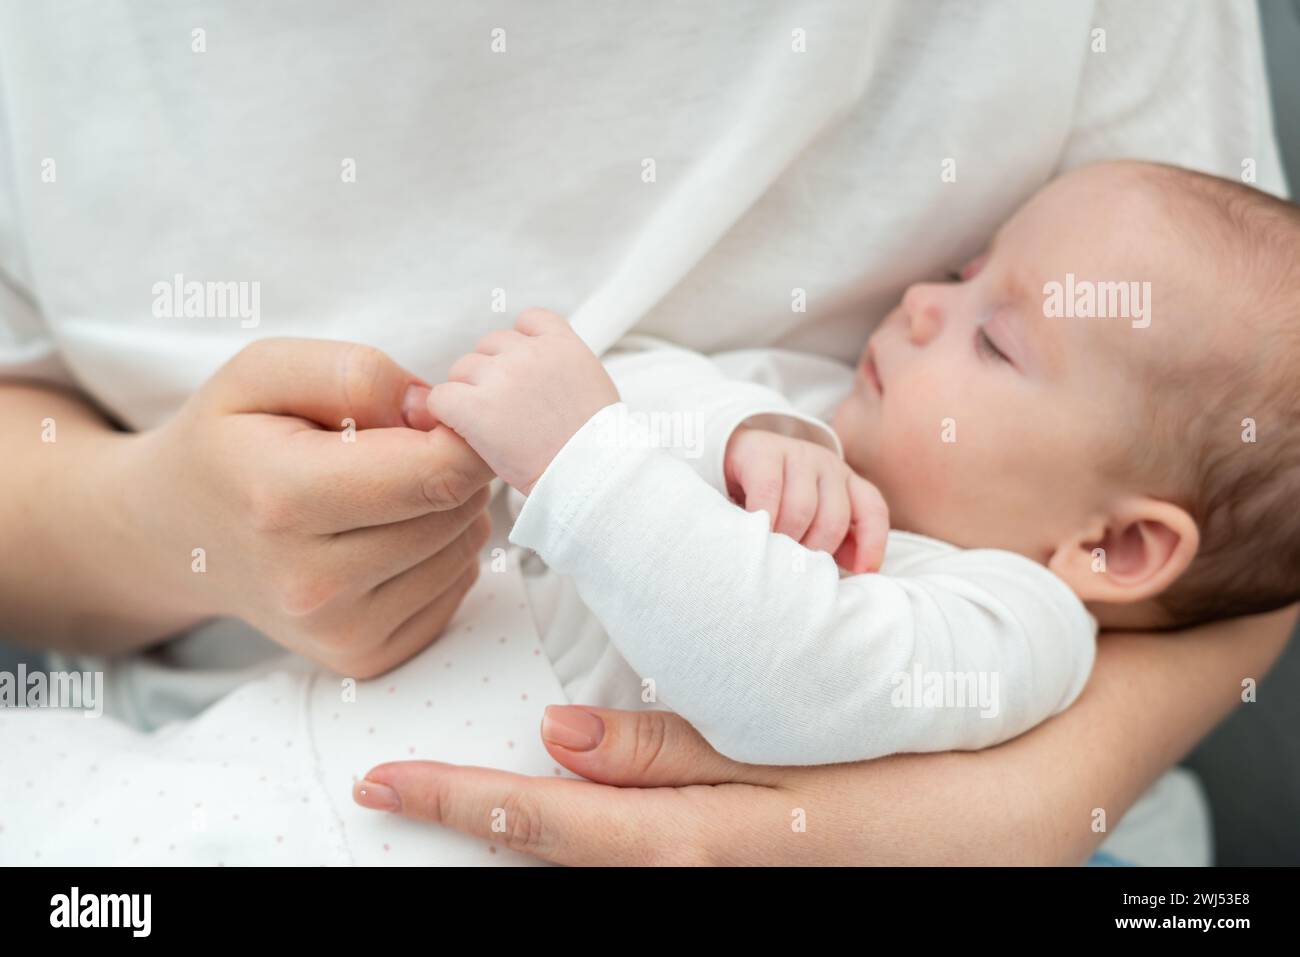 Die weiche Berührung des Säuglings, die den Finger der Mutter umklammert, spricht Bände. Das Konzept der reinen Mutter-Kind-Verbindung Stockfoto